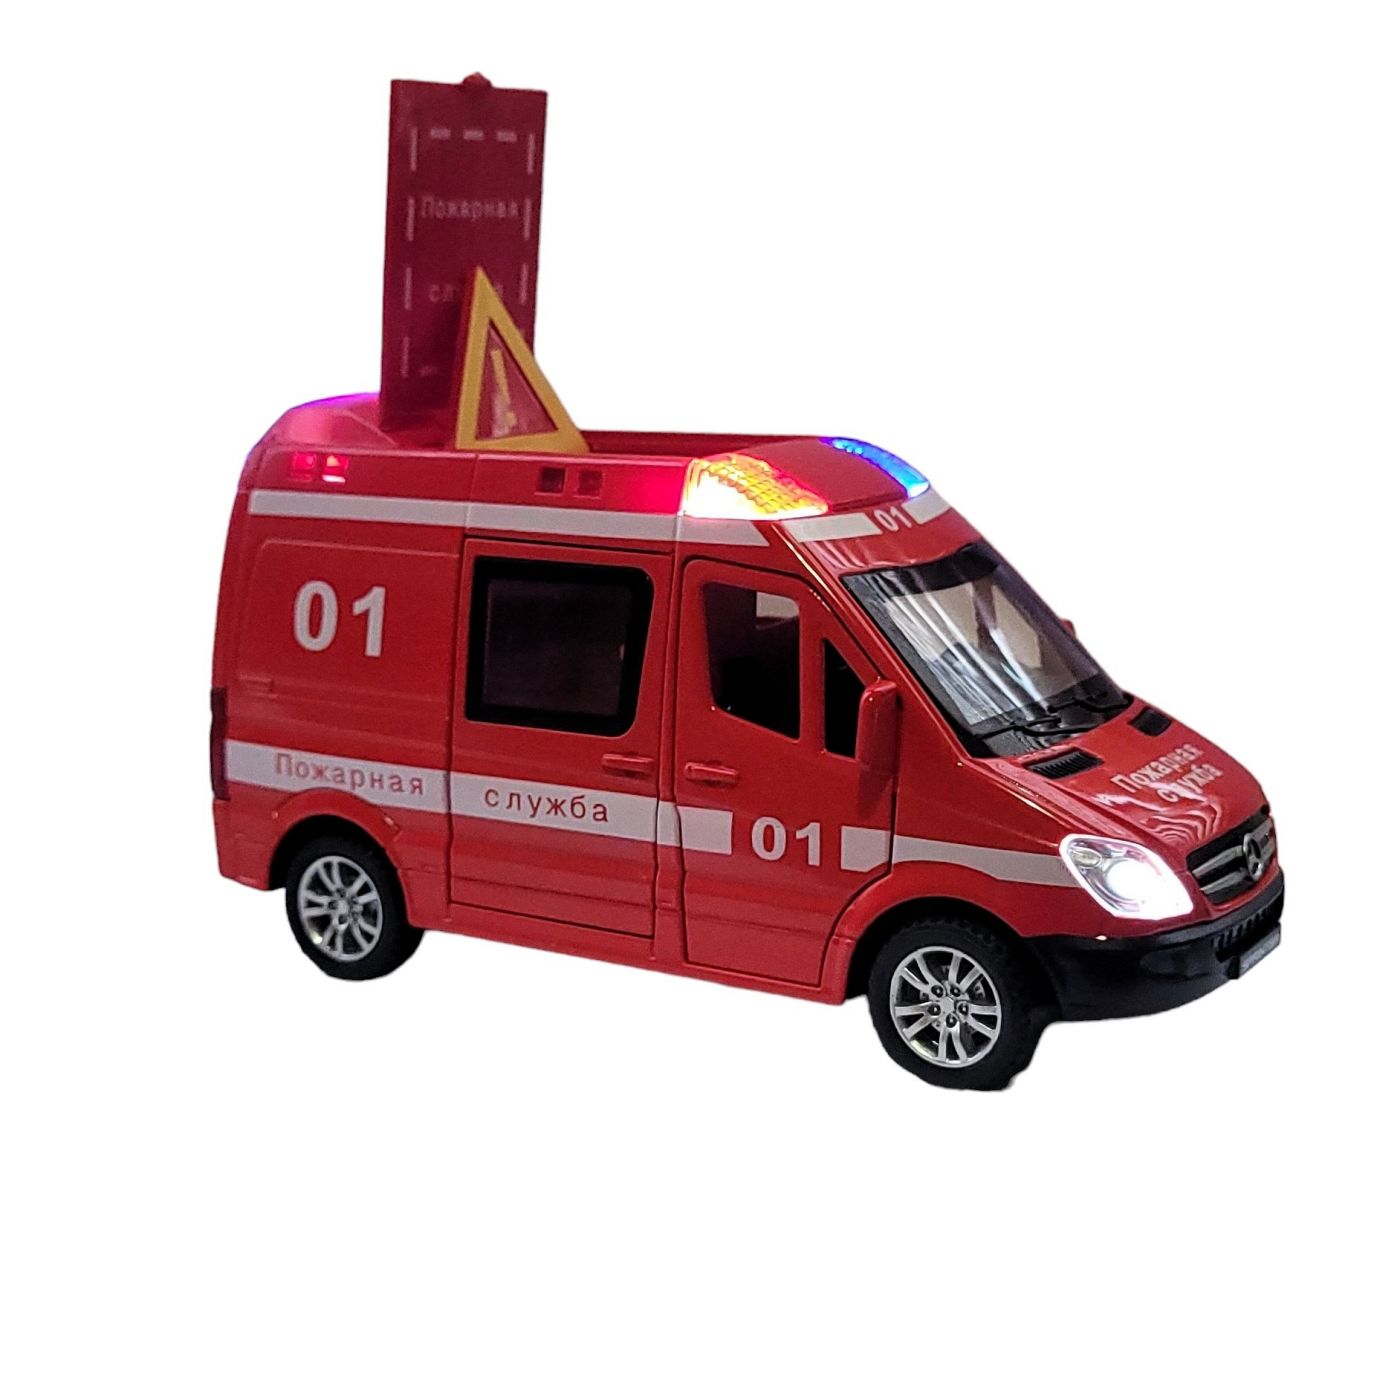 Металлическая модель Mercedes Sprinter пожарная служба 1:32 свет, звук сирены CZ60A